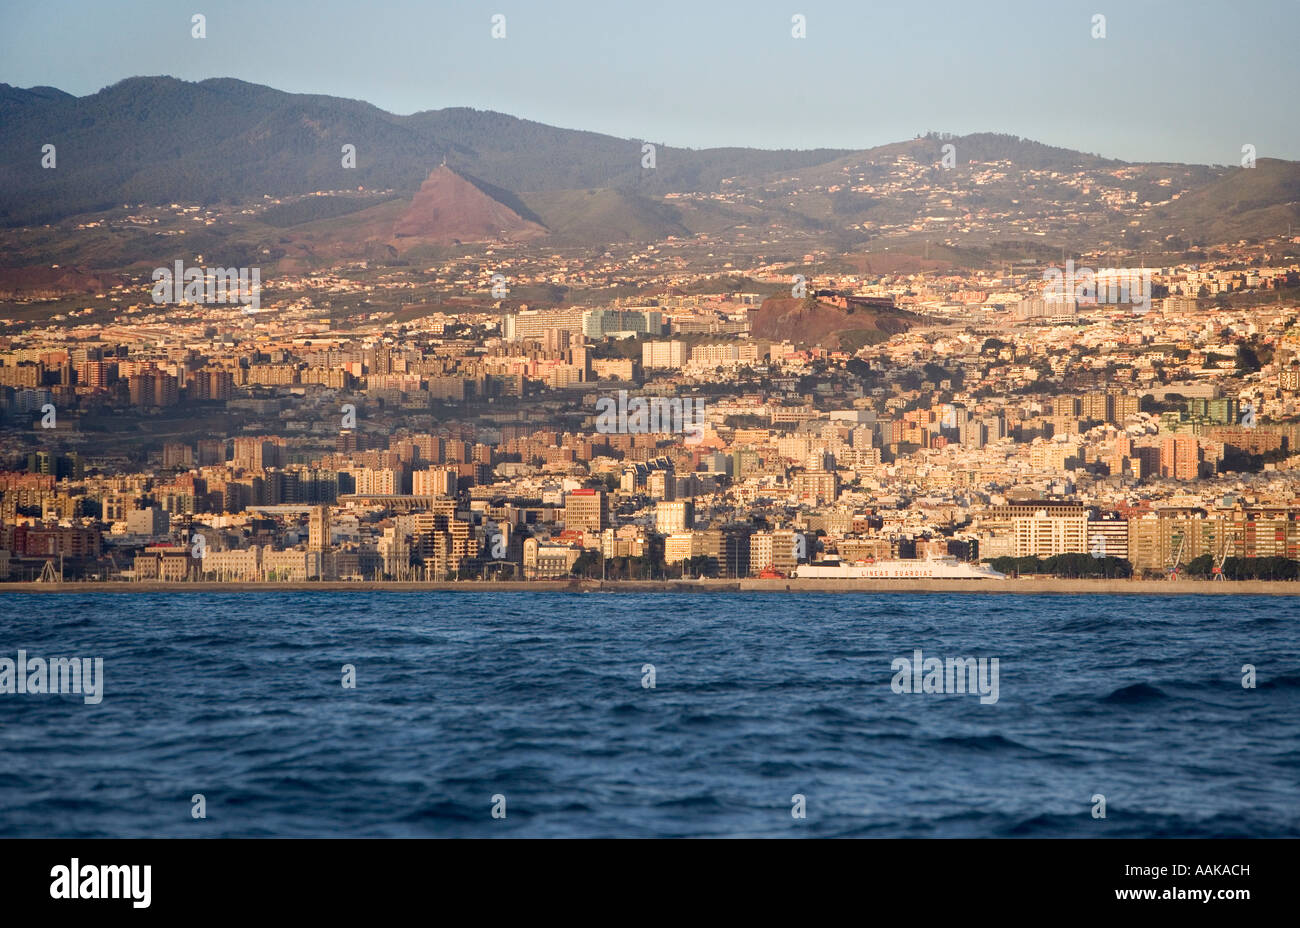 La città di Santa Cruz sull isola di Tenerife nelle Canarie come si vede dall'acqua Foto Stock